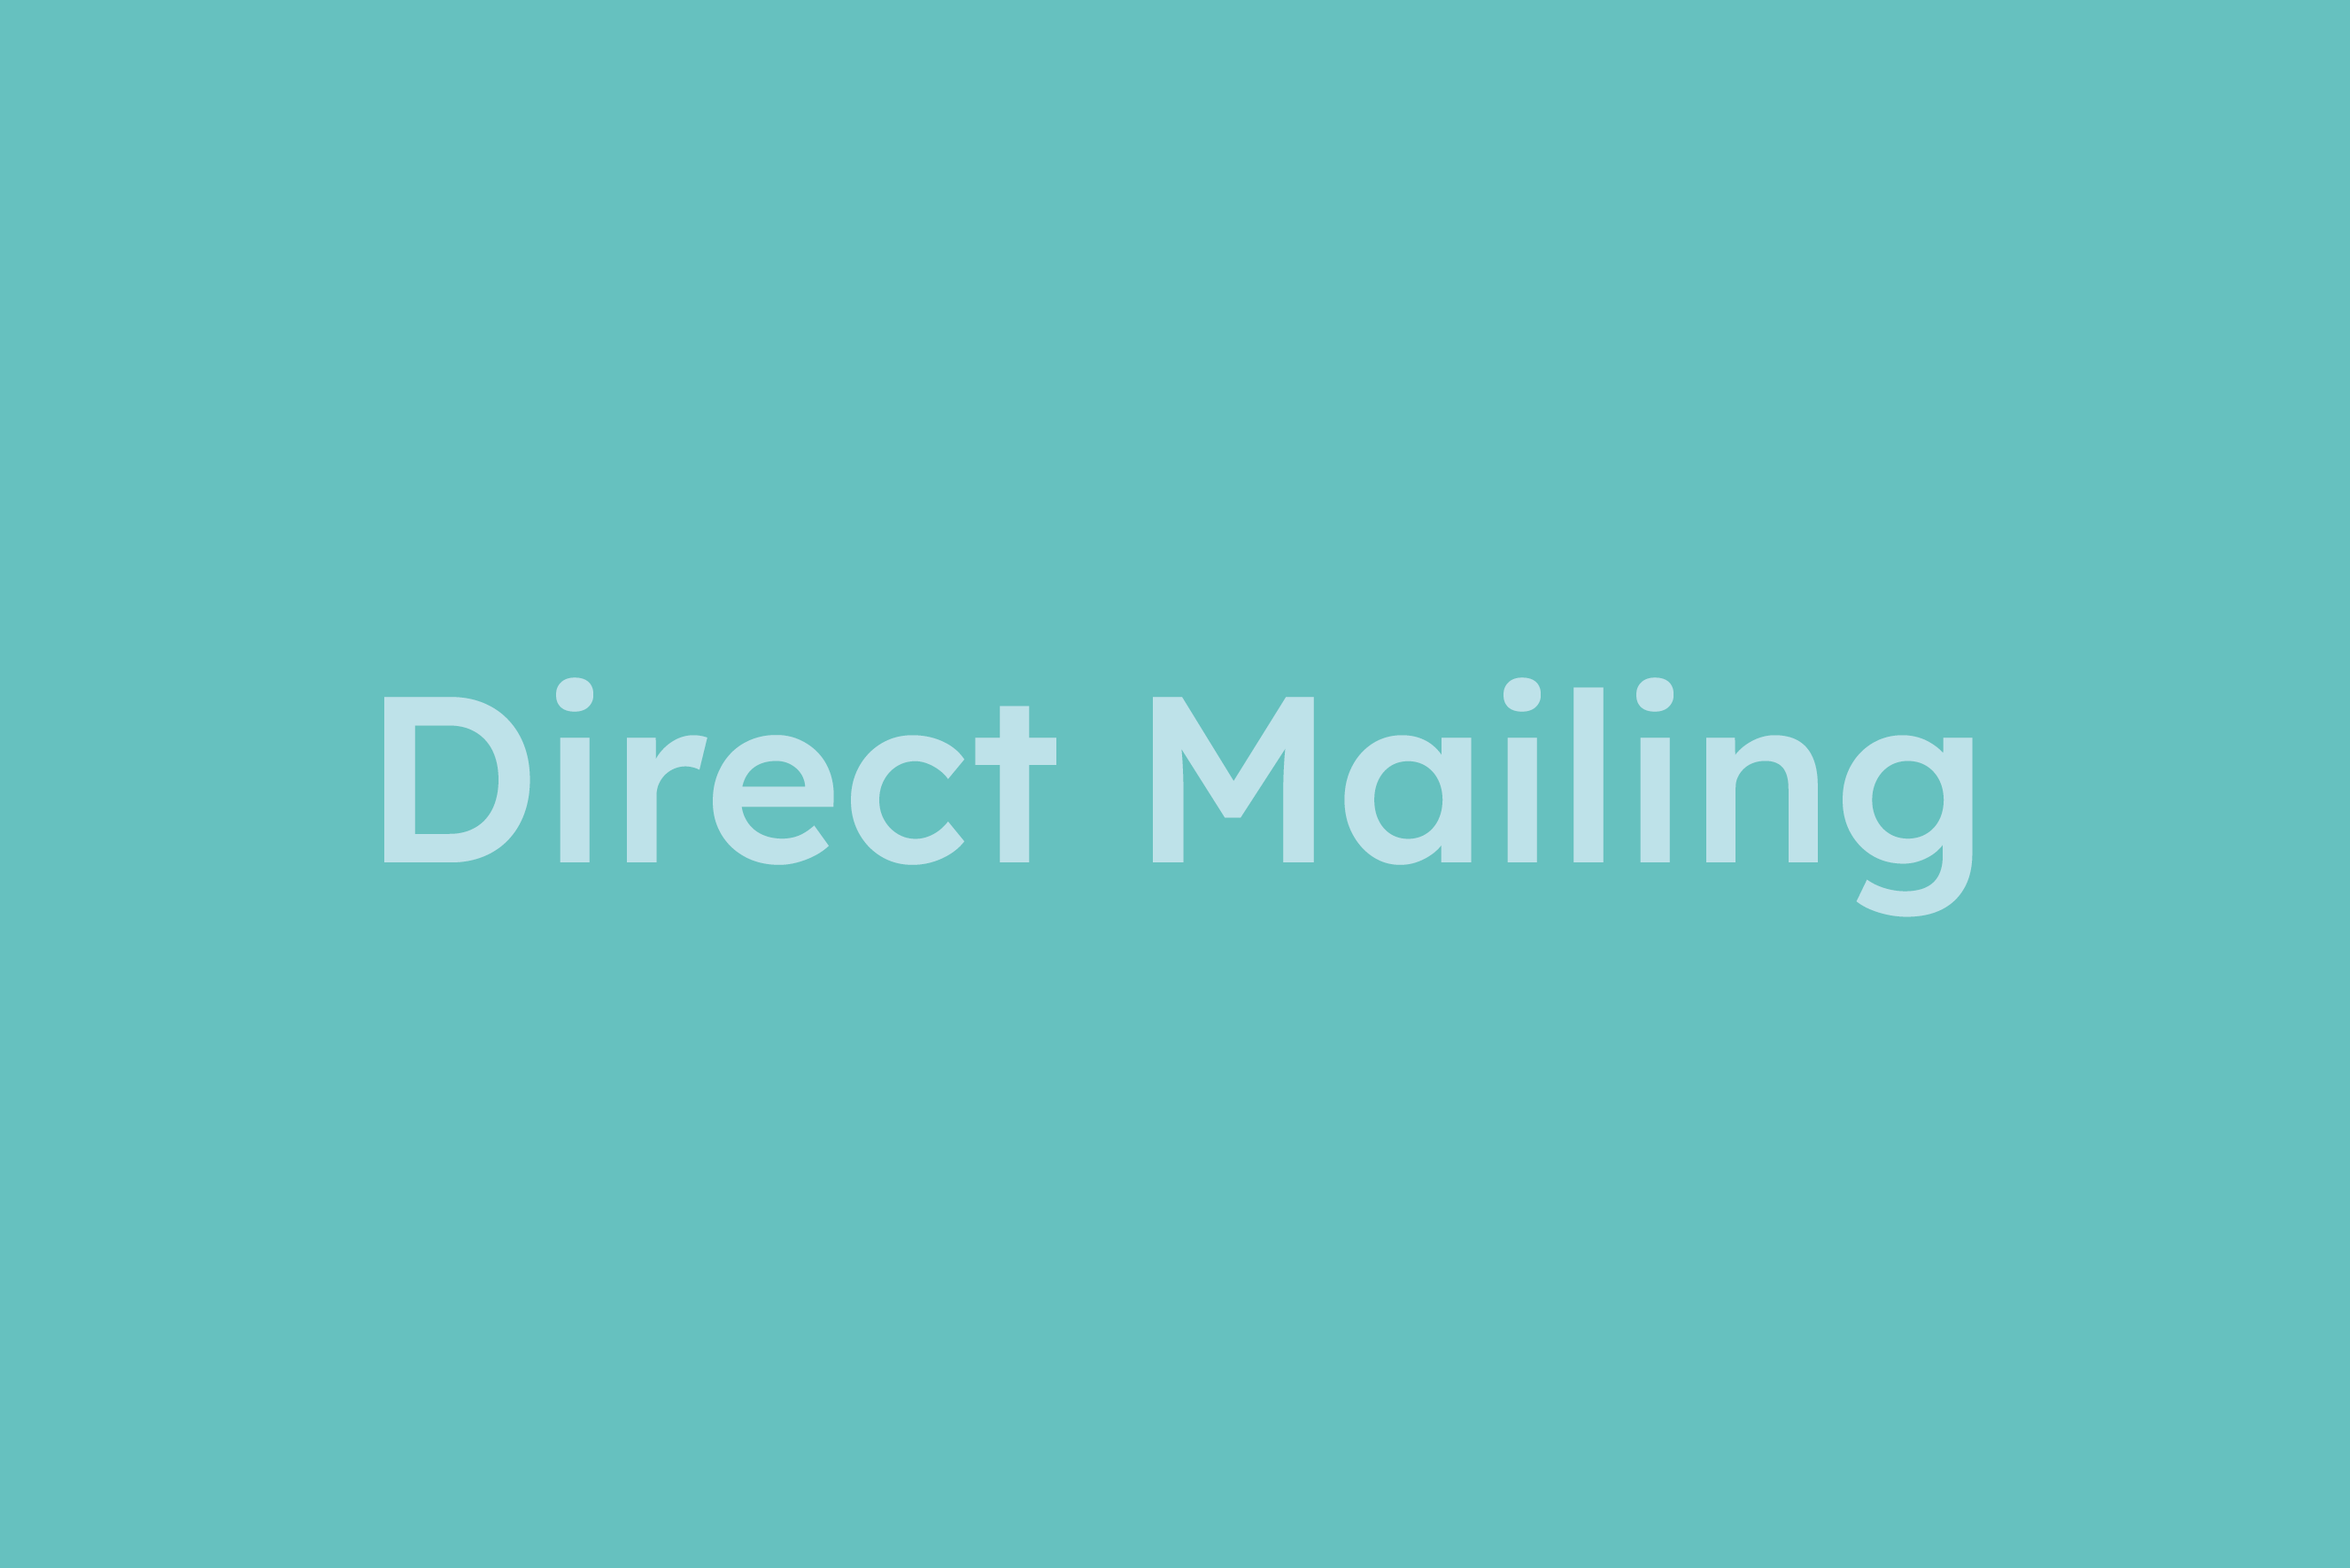 Direct Mail erklärt im Glossar von Campaign